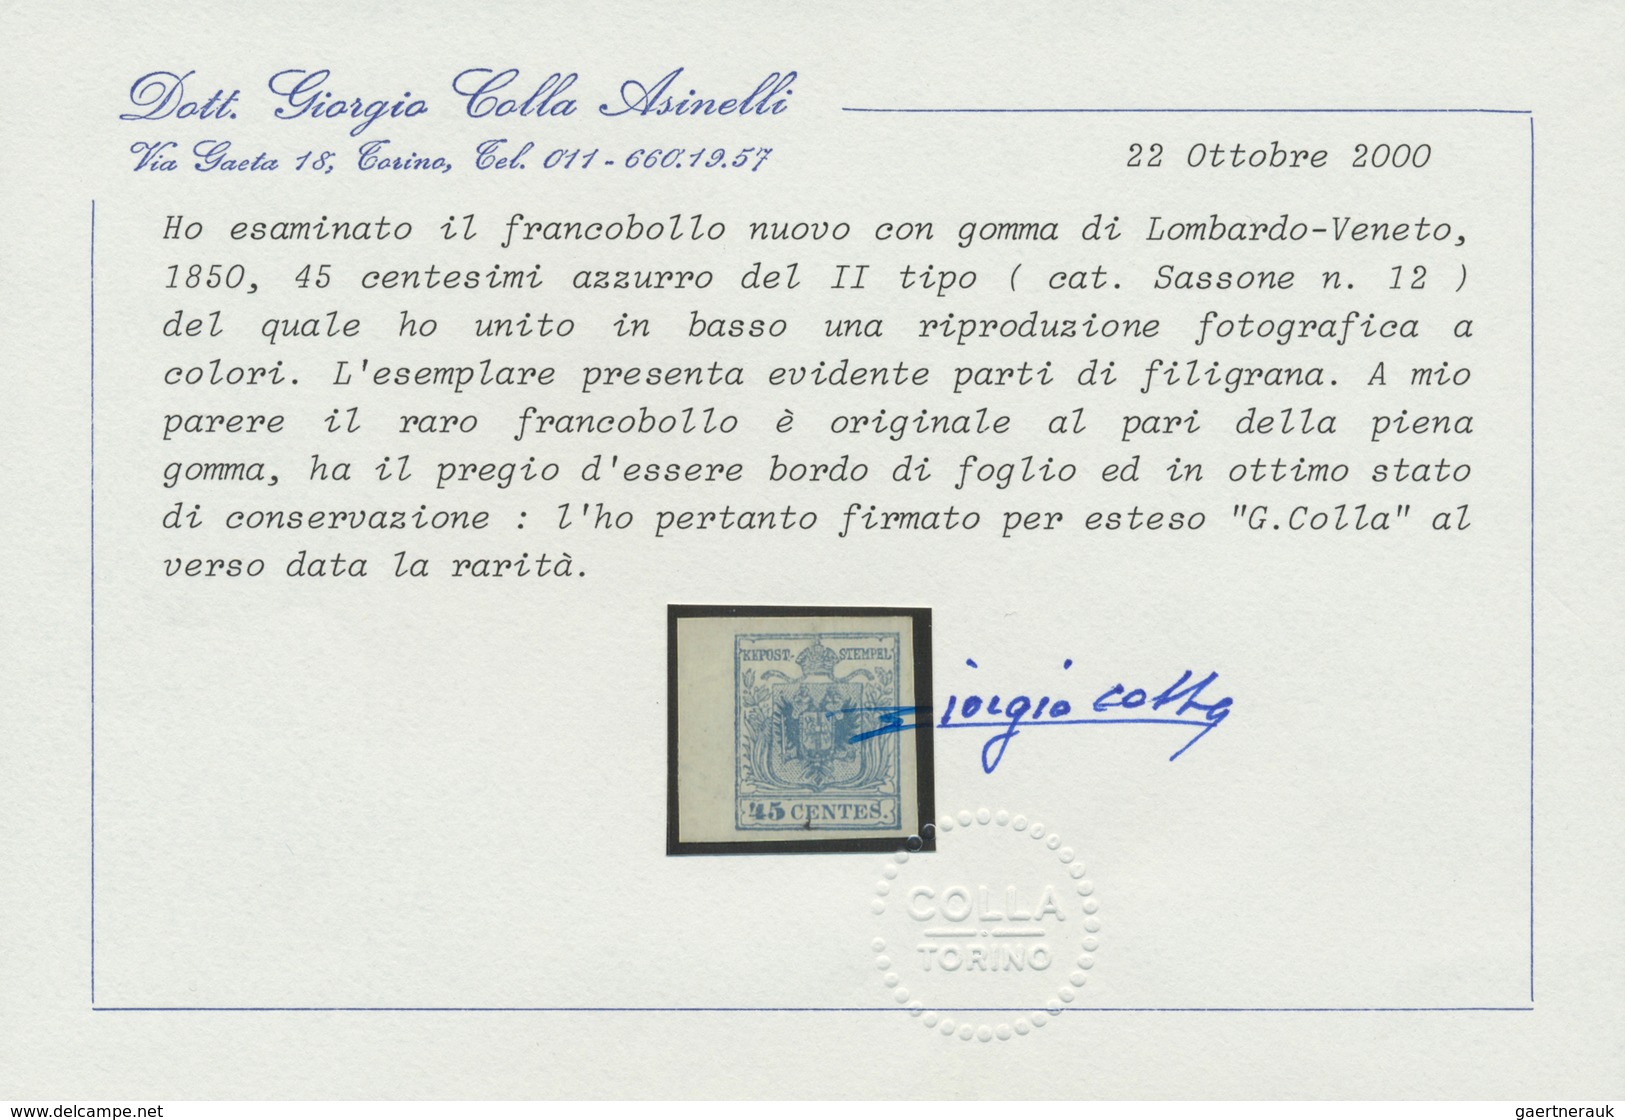 * Österreich - Lombardei Und Venetien: 1850, 45 Centesimi Dunkelblau, Handpapier Type III Ungebraucht, - Lombardo-Vénétie